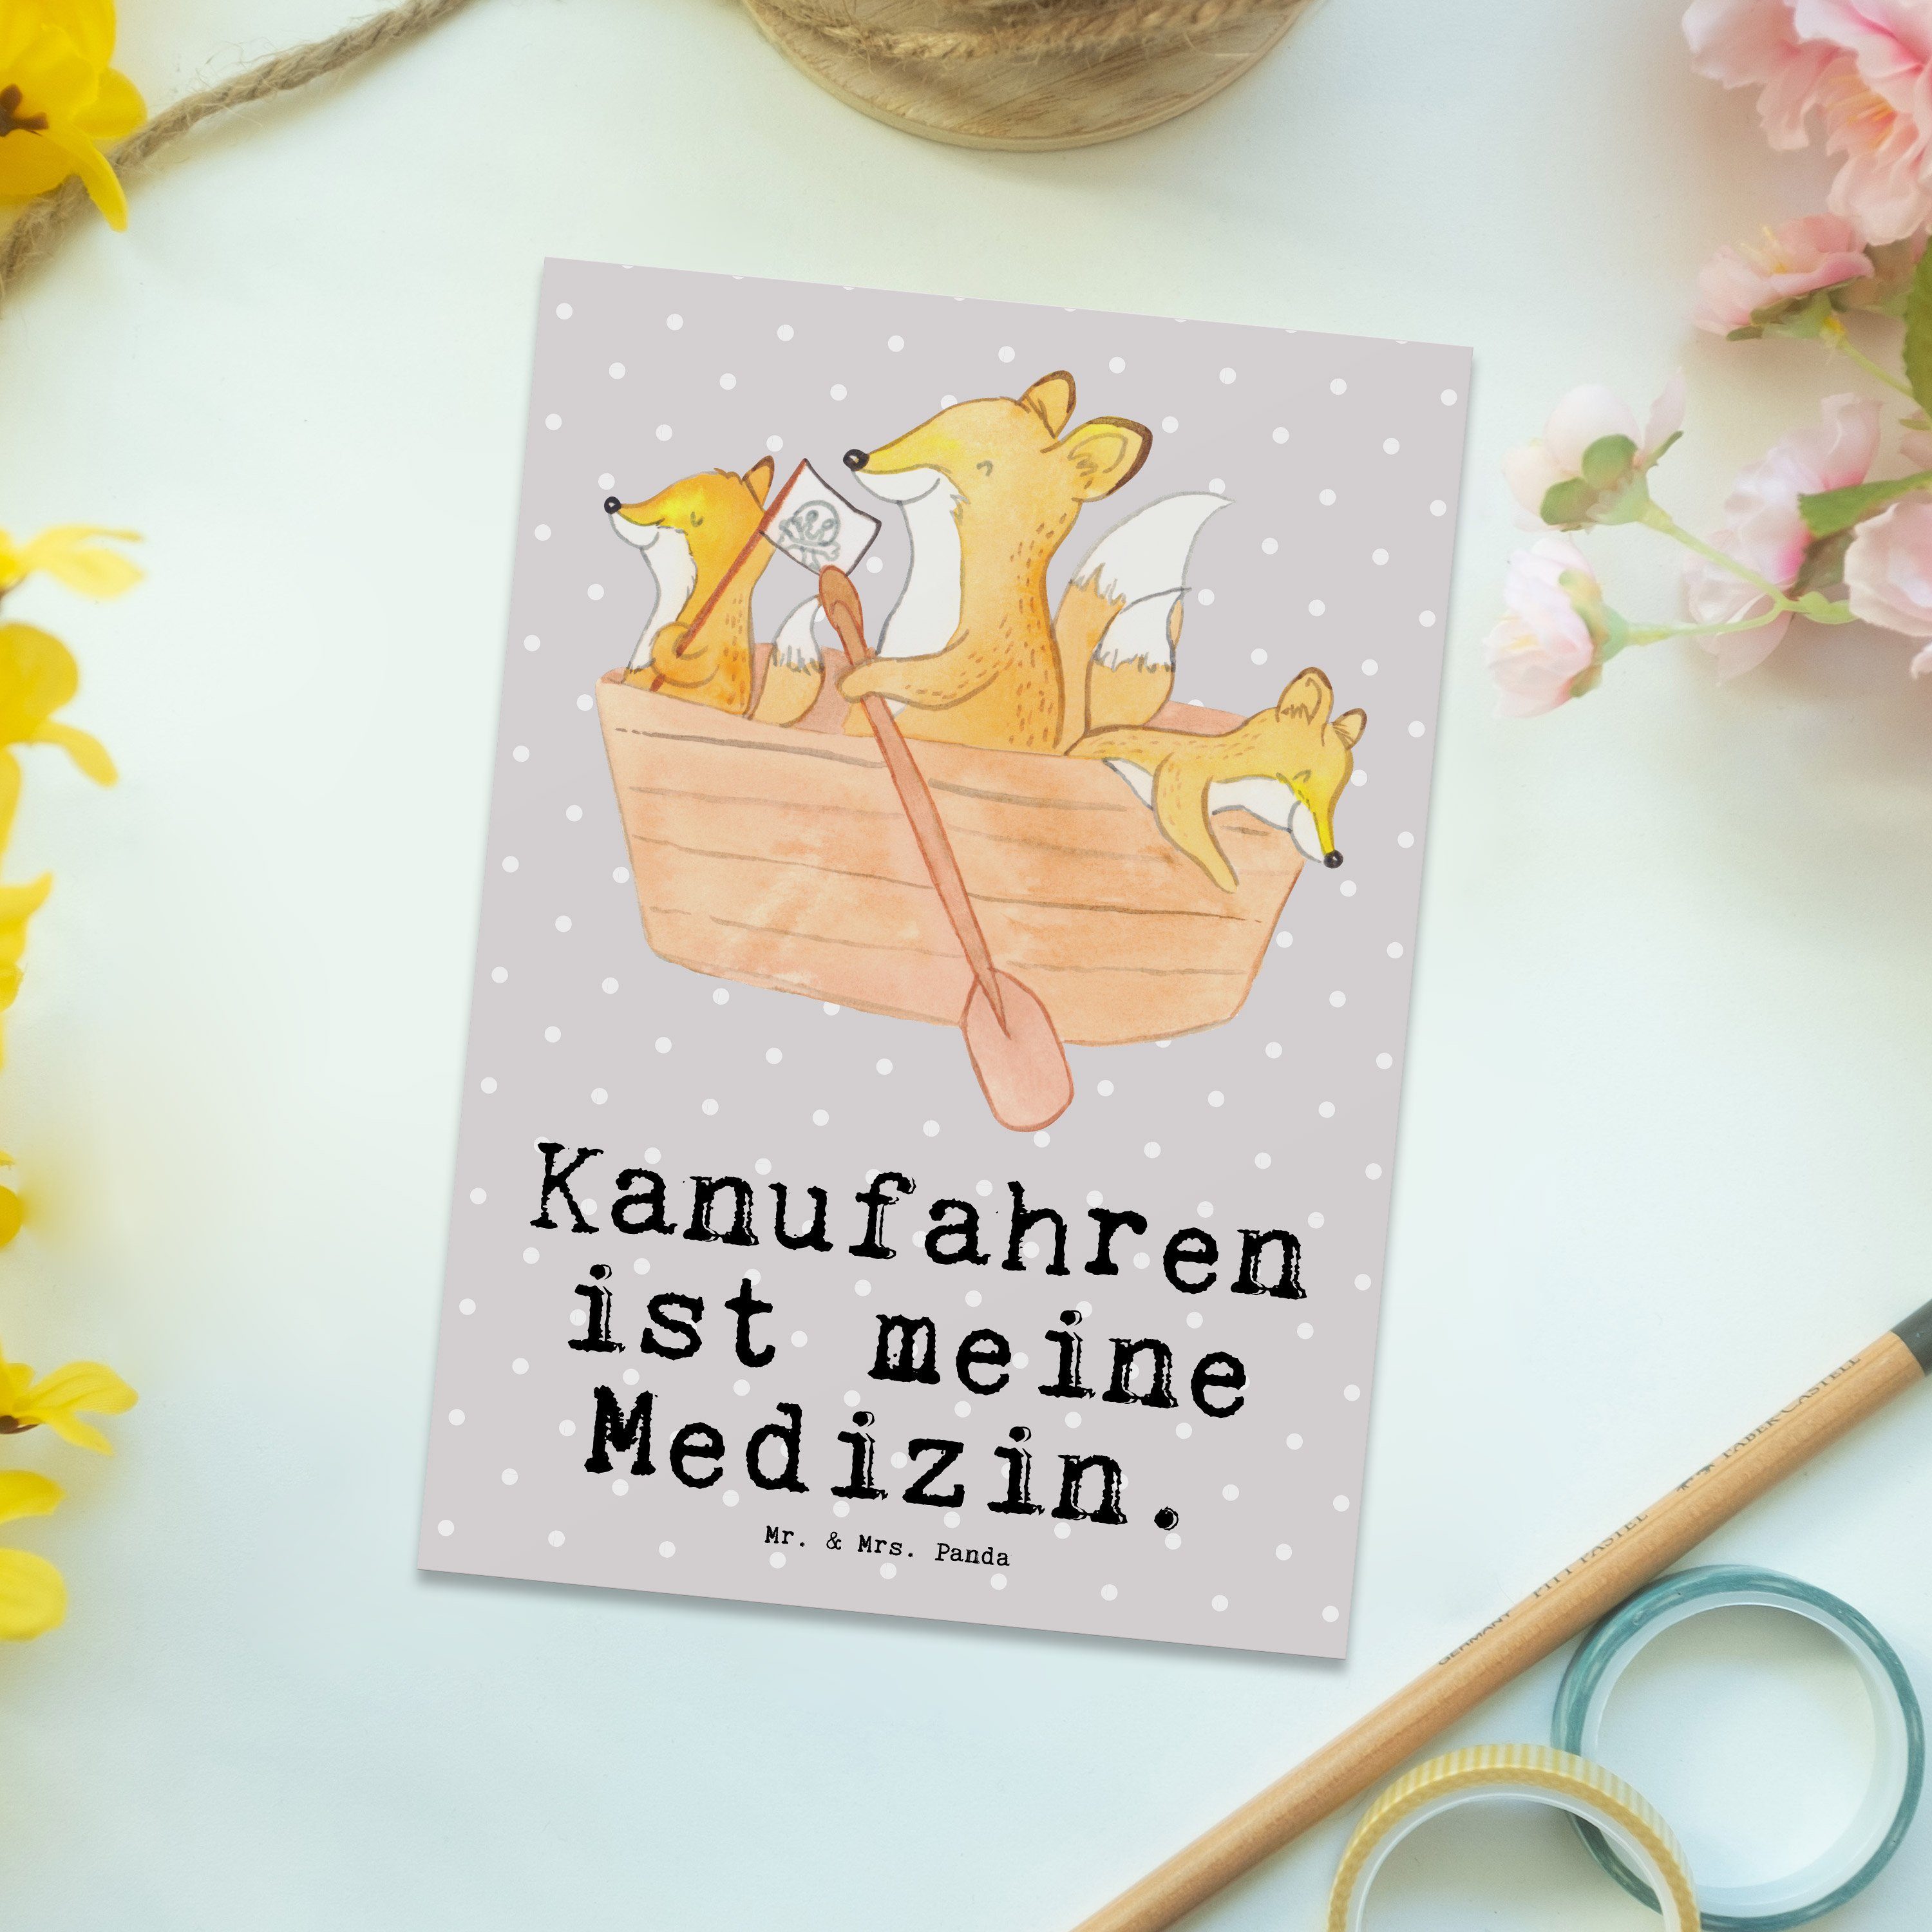 Mr. & Mrs. Panda Postkarte Bär Kanufahren Medizin - Grau Pastell - Geschenk, Kanu Schule, Gesche